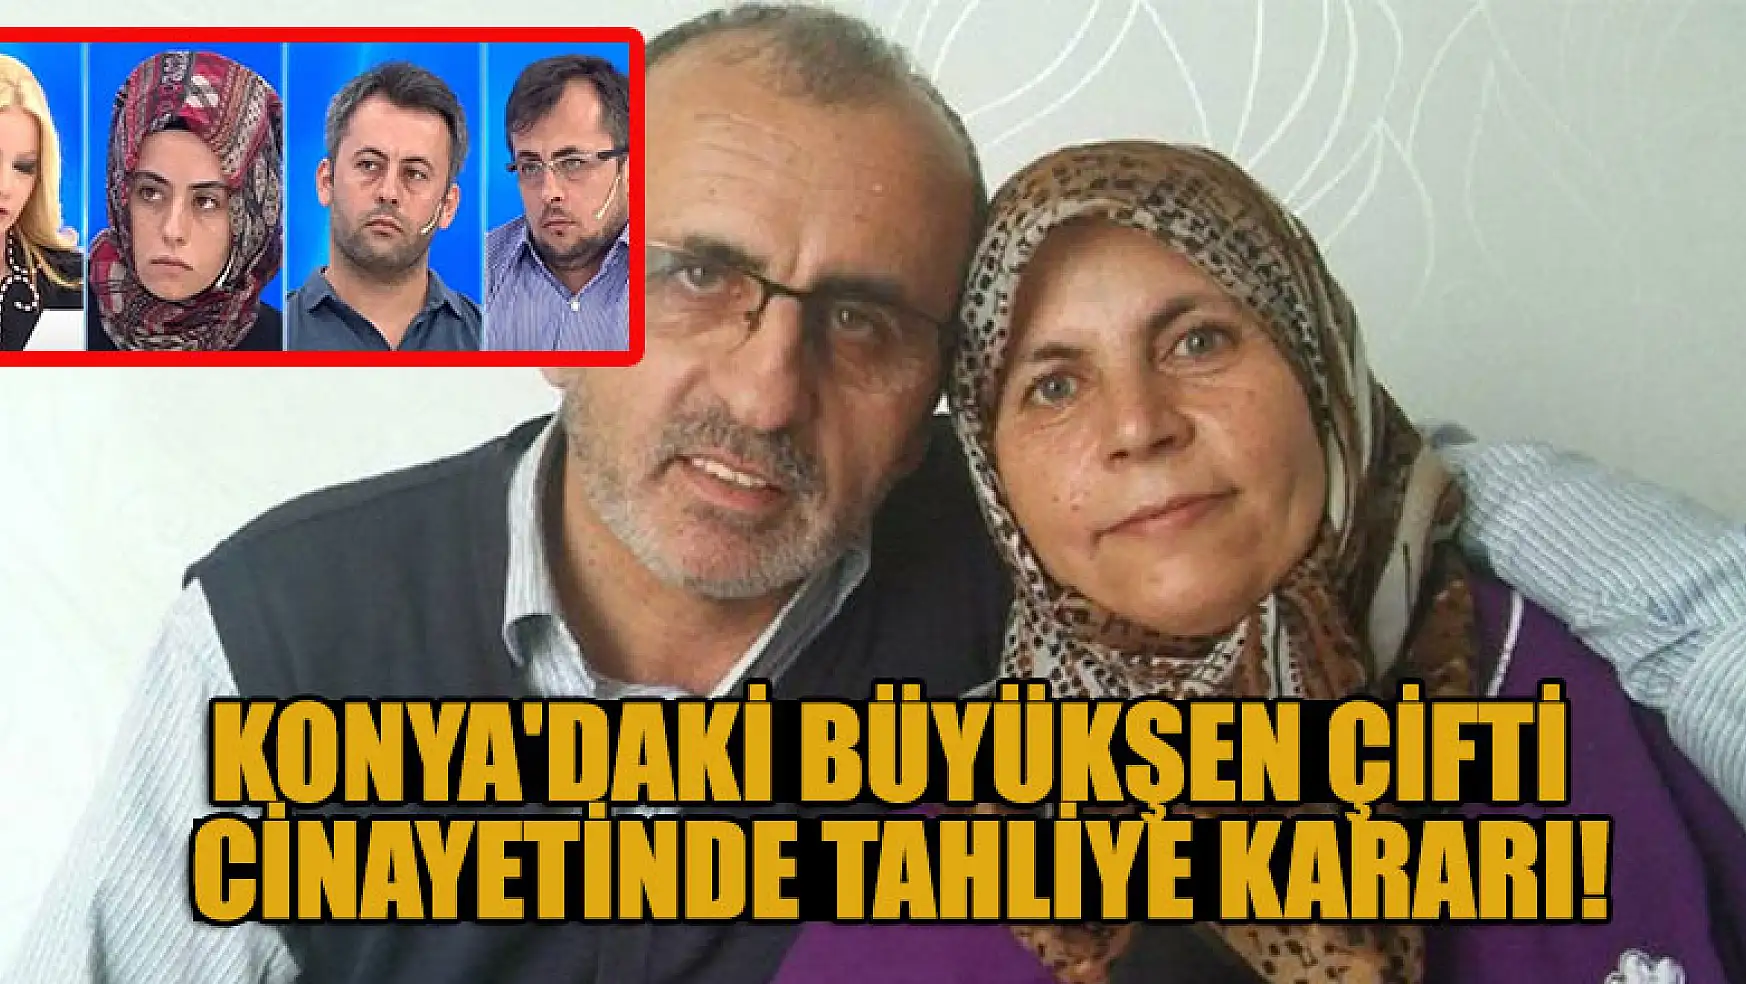 Konya'daki Büyükşen çifti cinayetinde tahliye kararı!